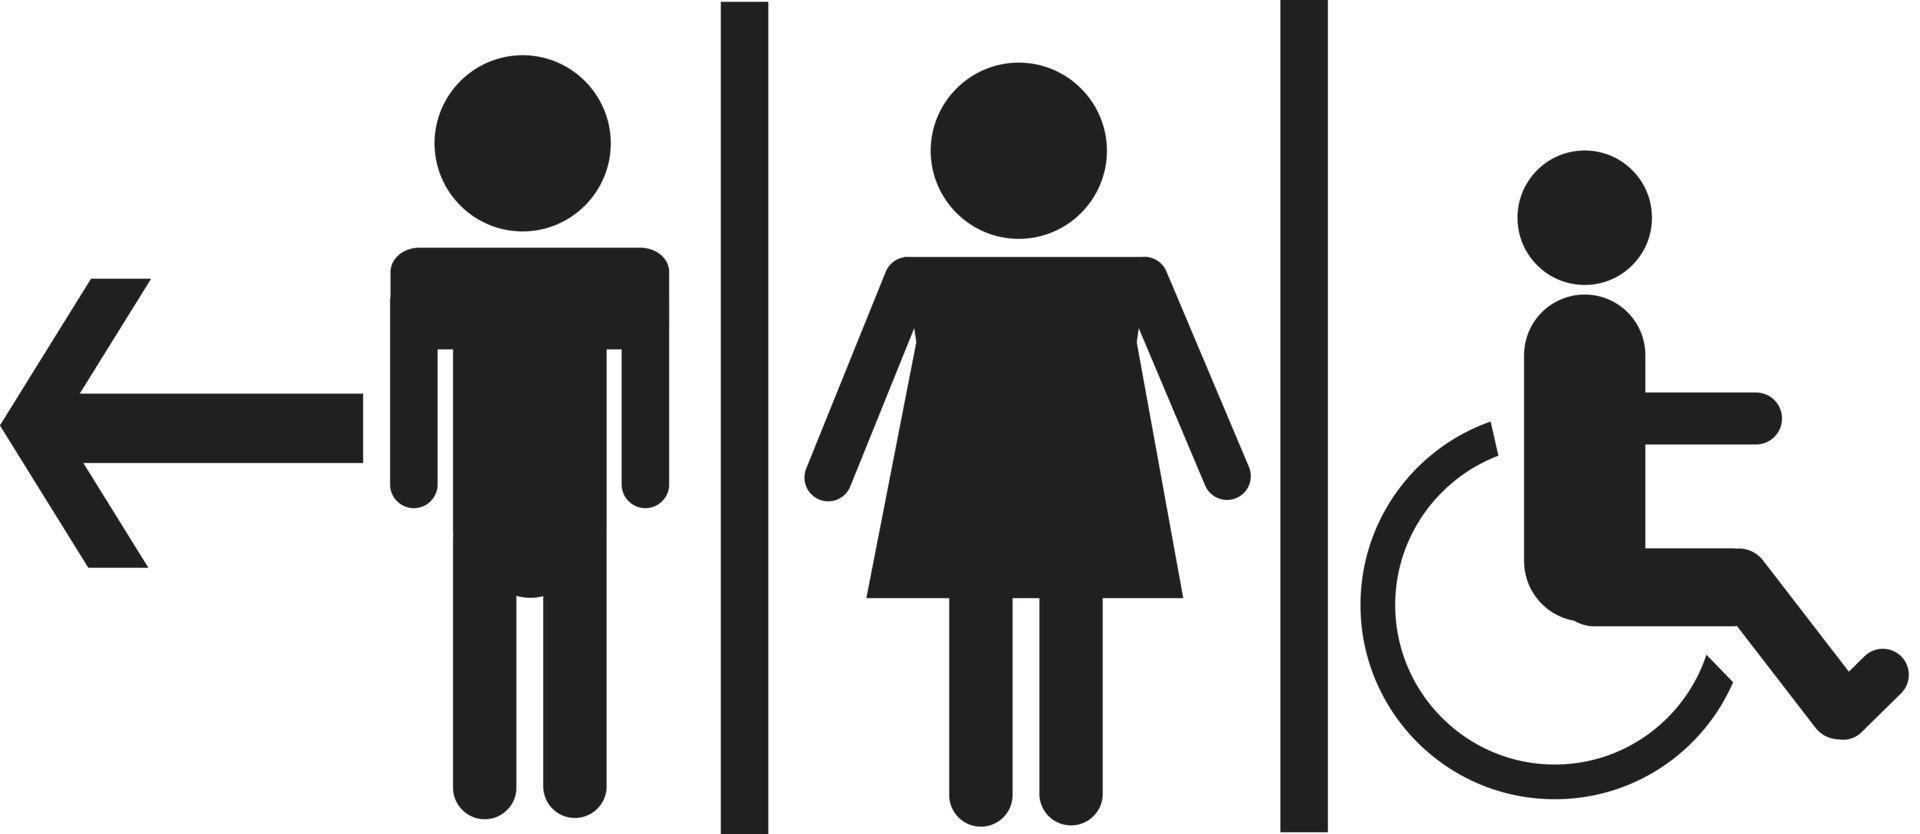 un homme et une femme signe de toilette, signe de toilette sur fond blanc vecteur